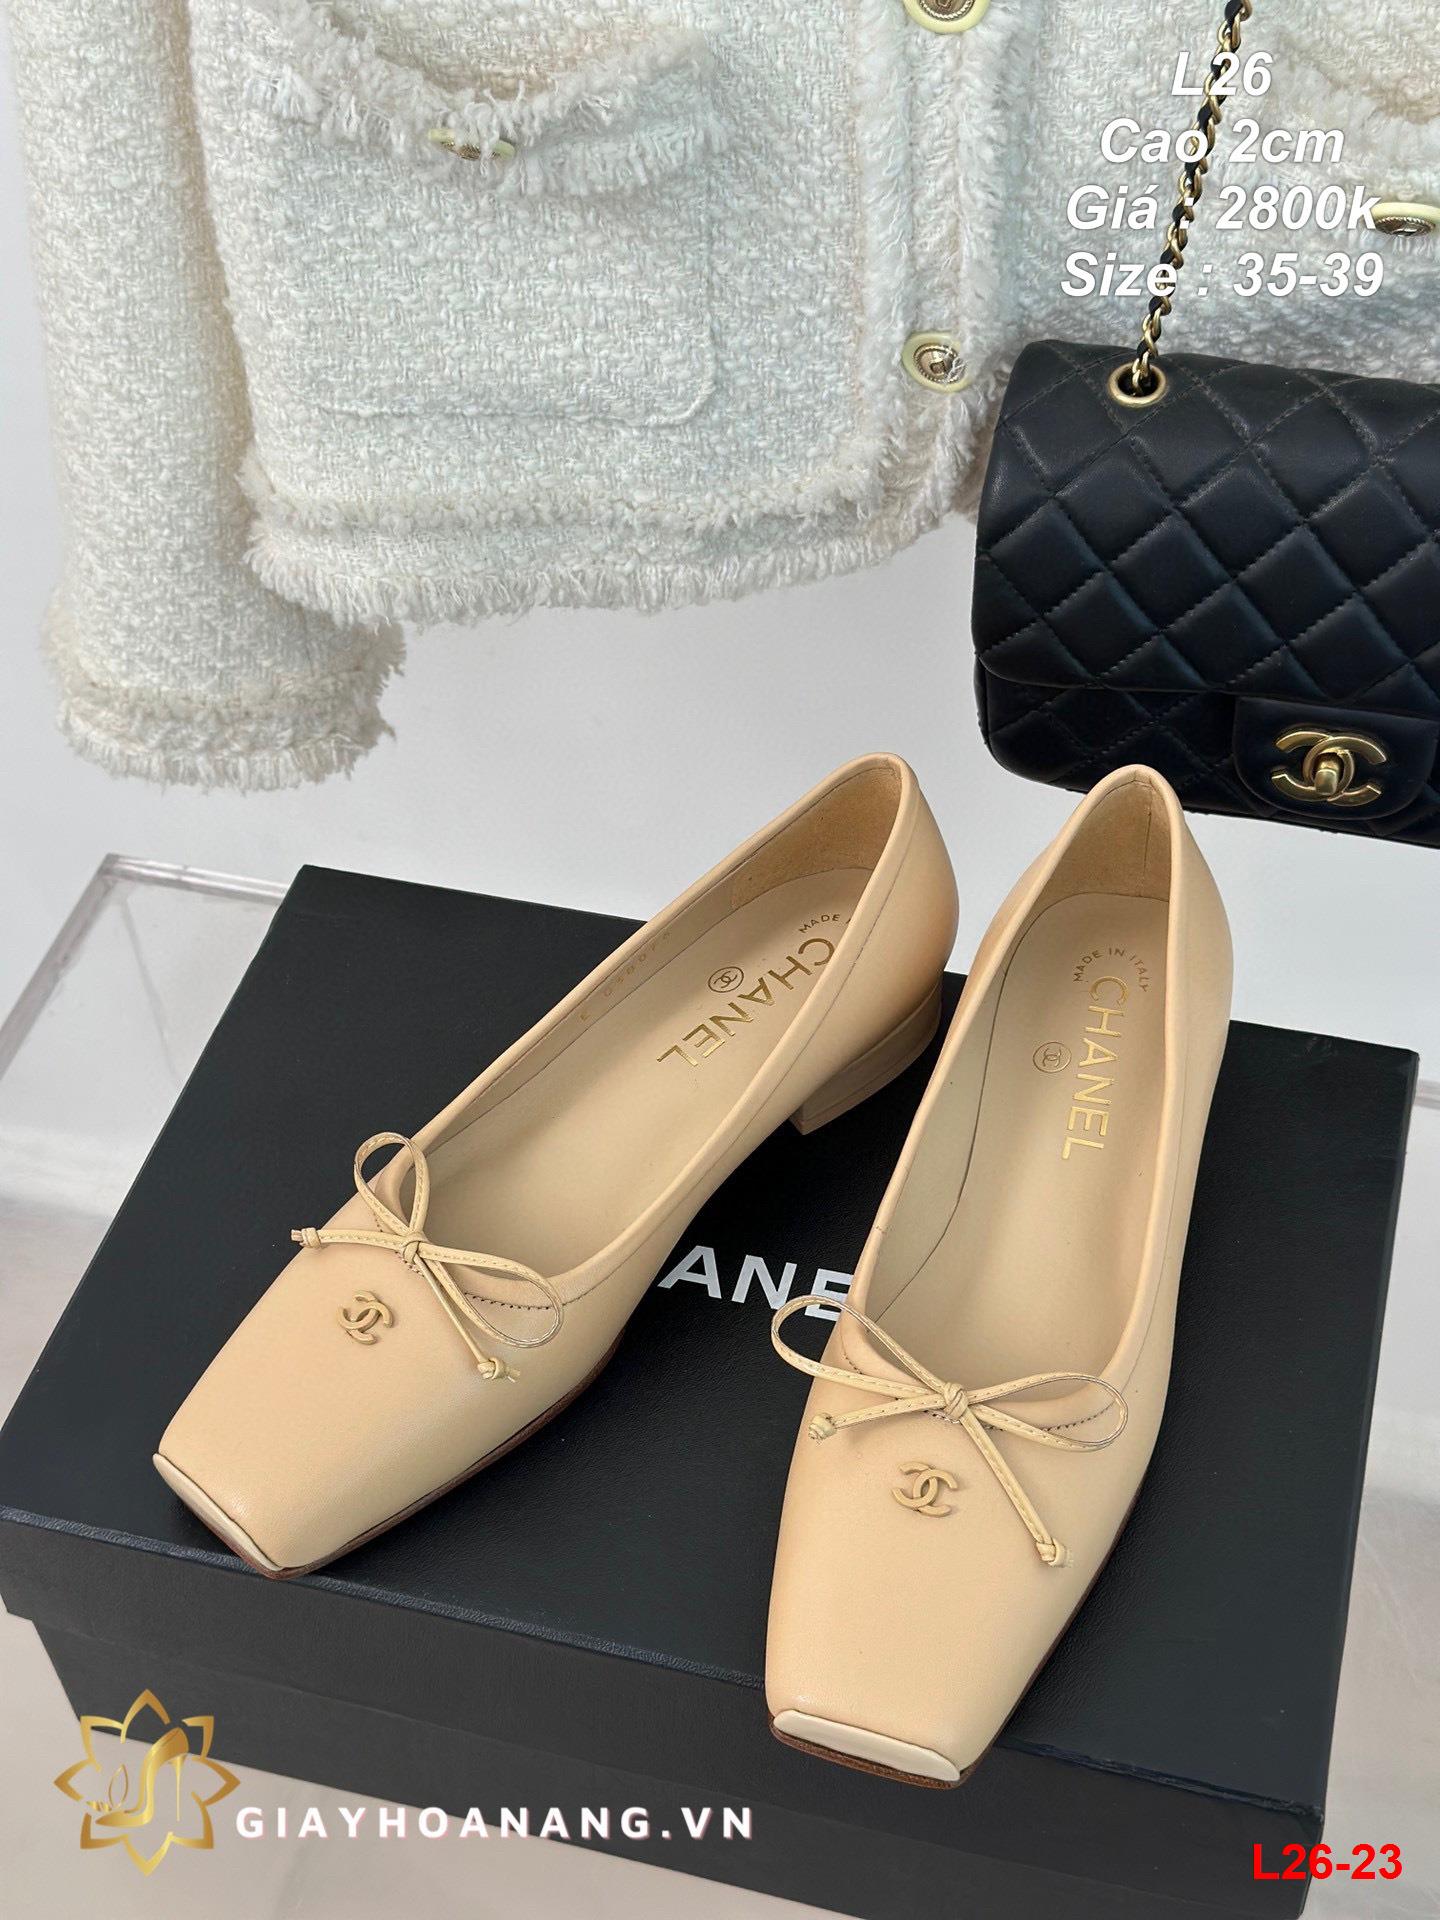 L26-23 Chanel giày cao 2cm siêu cấp